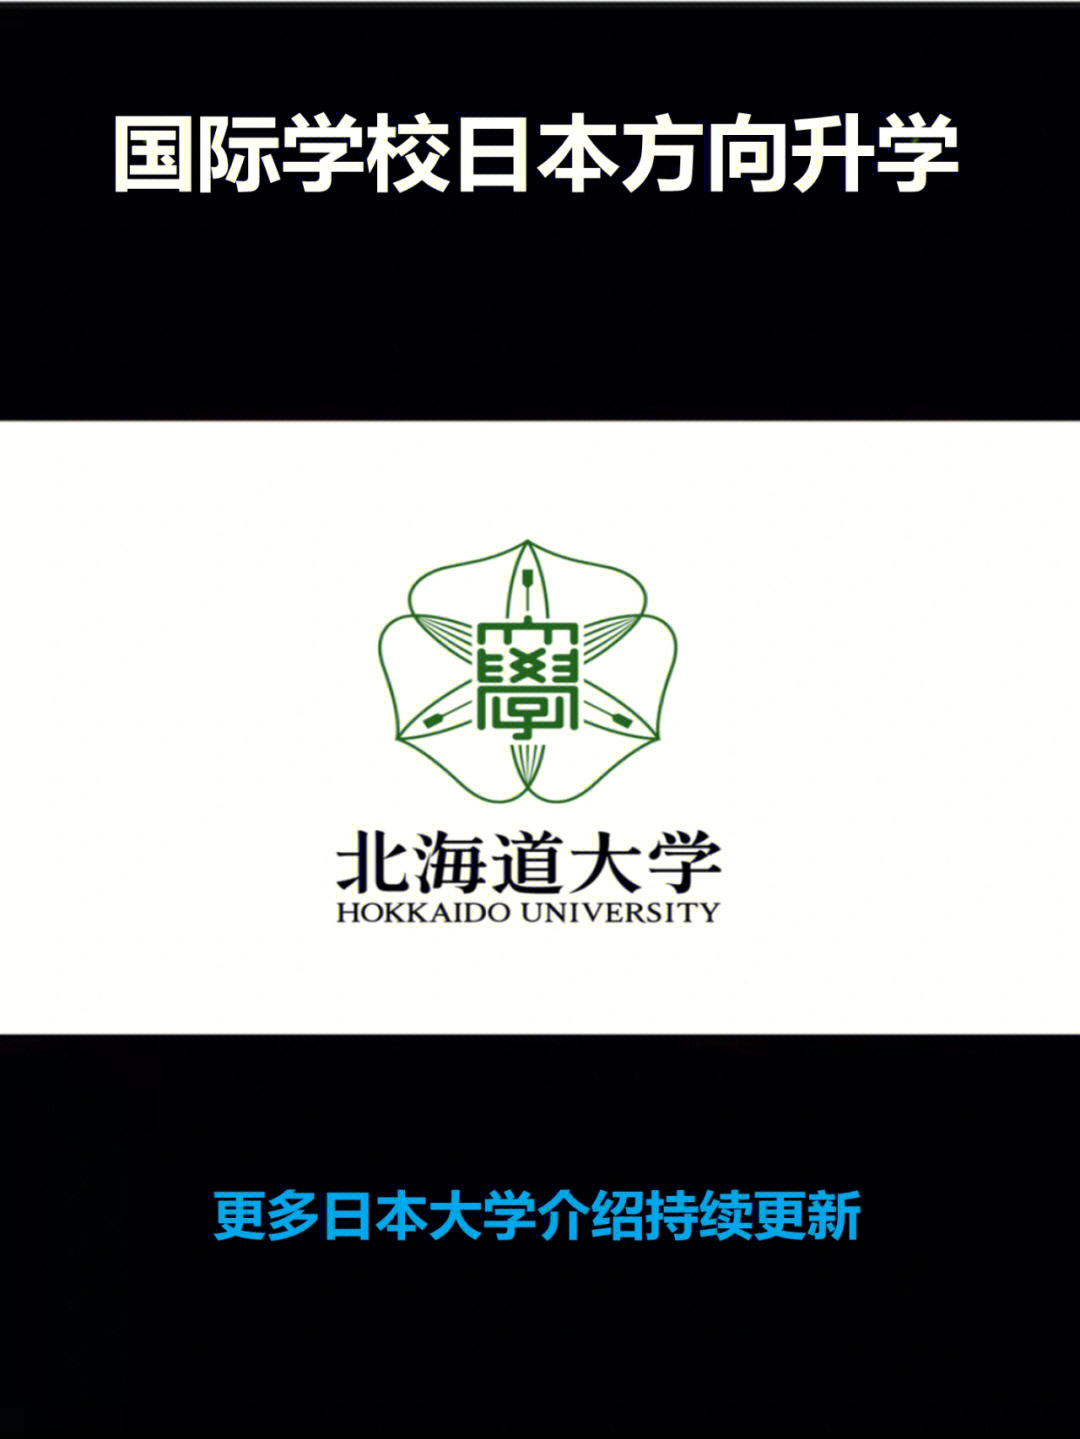 北海道大学校徽图片